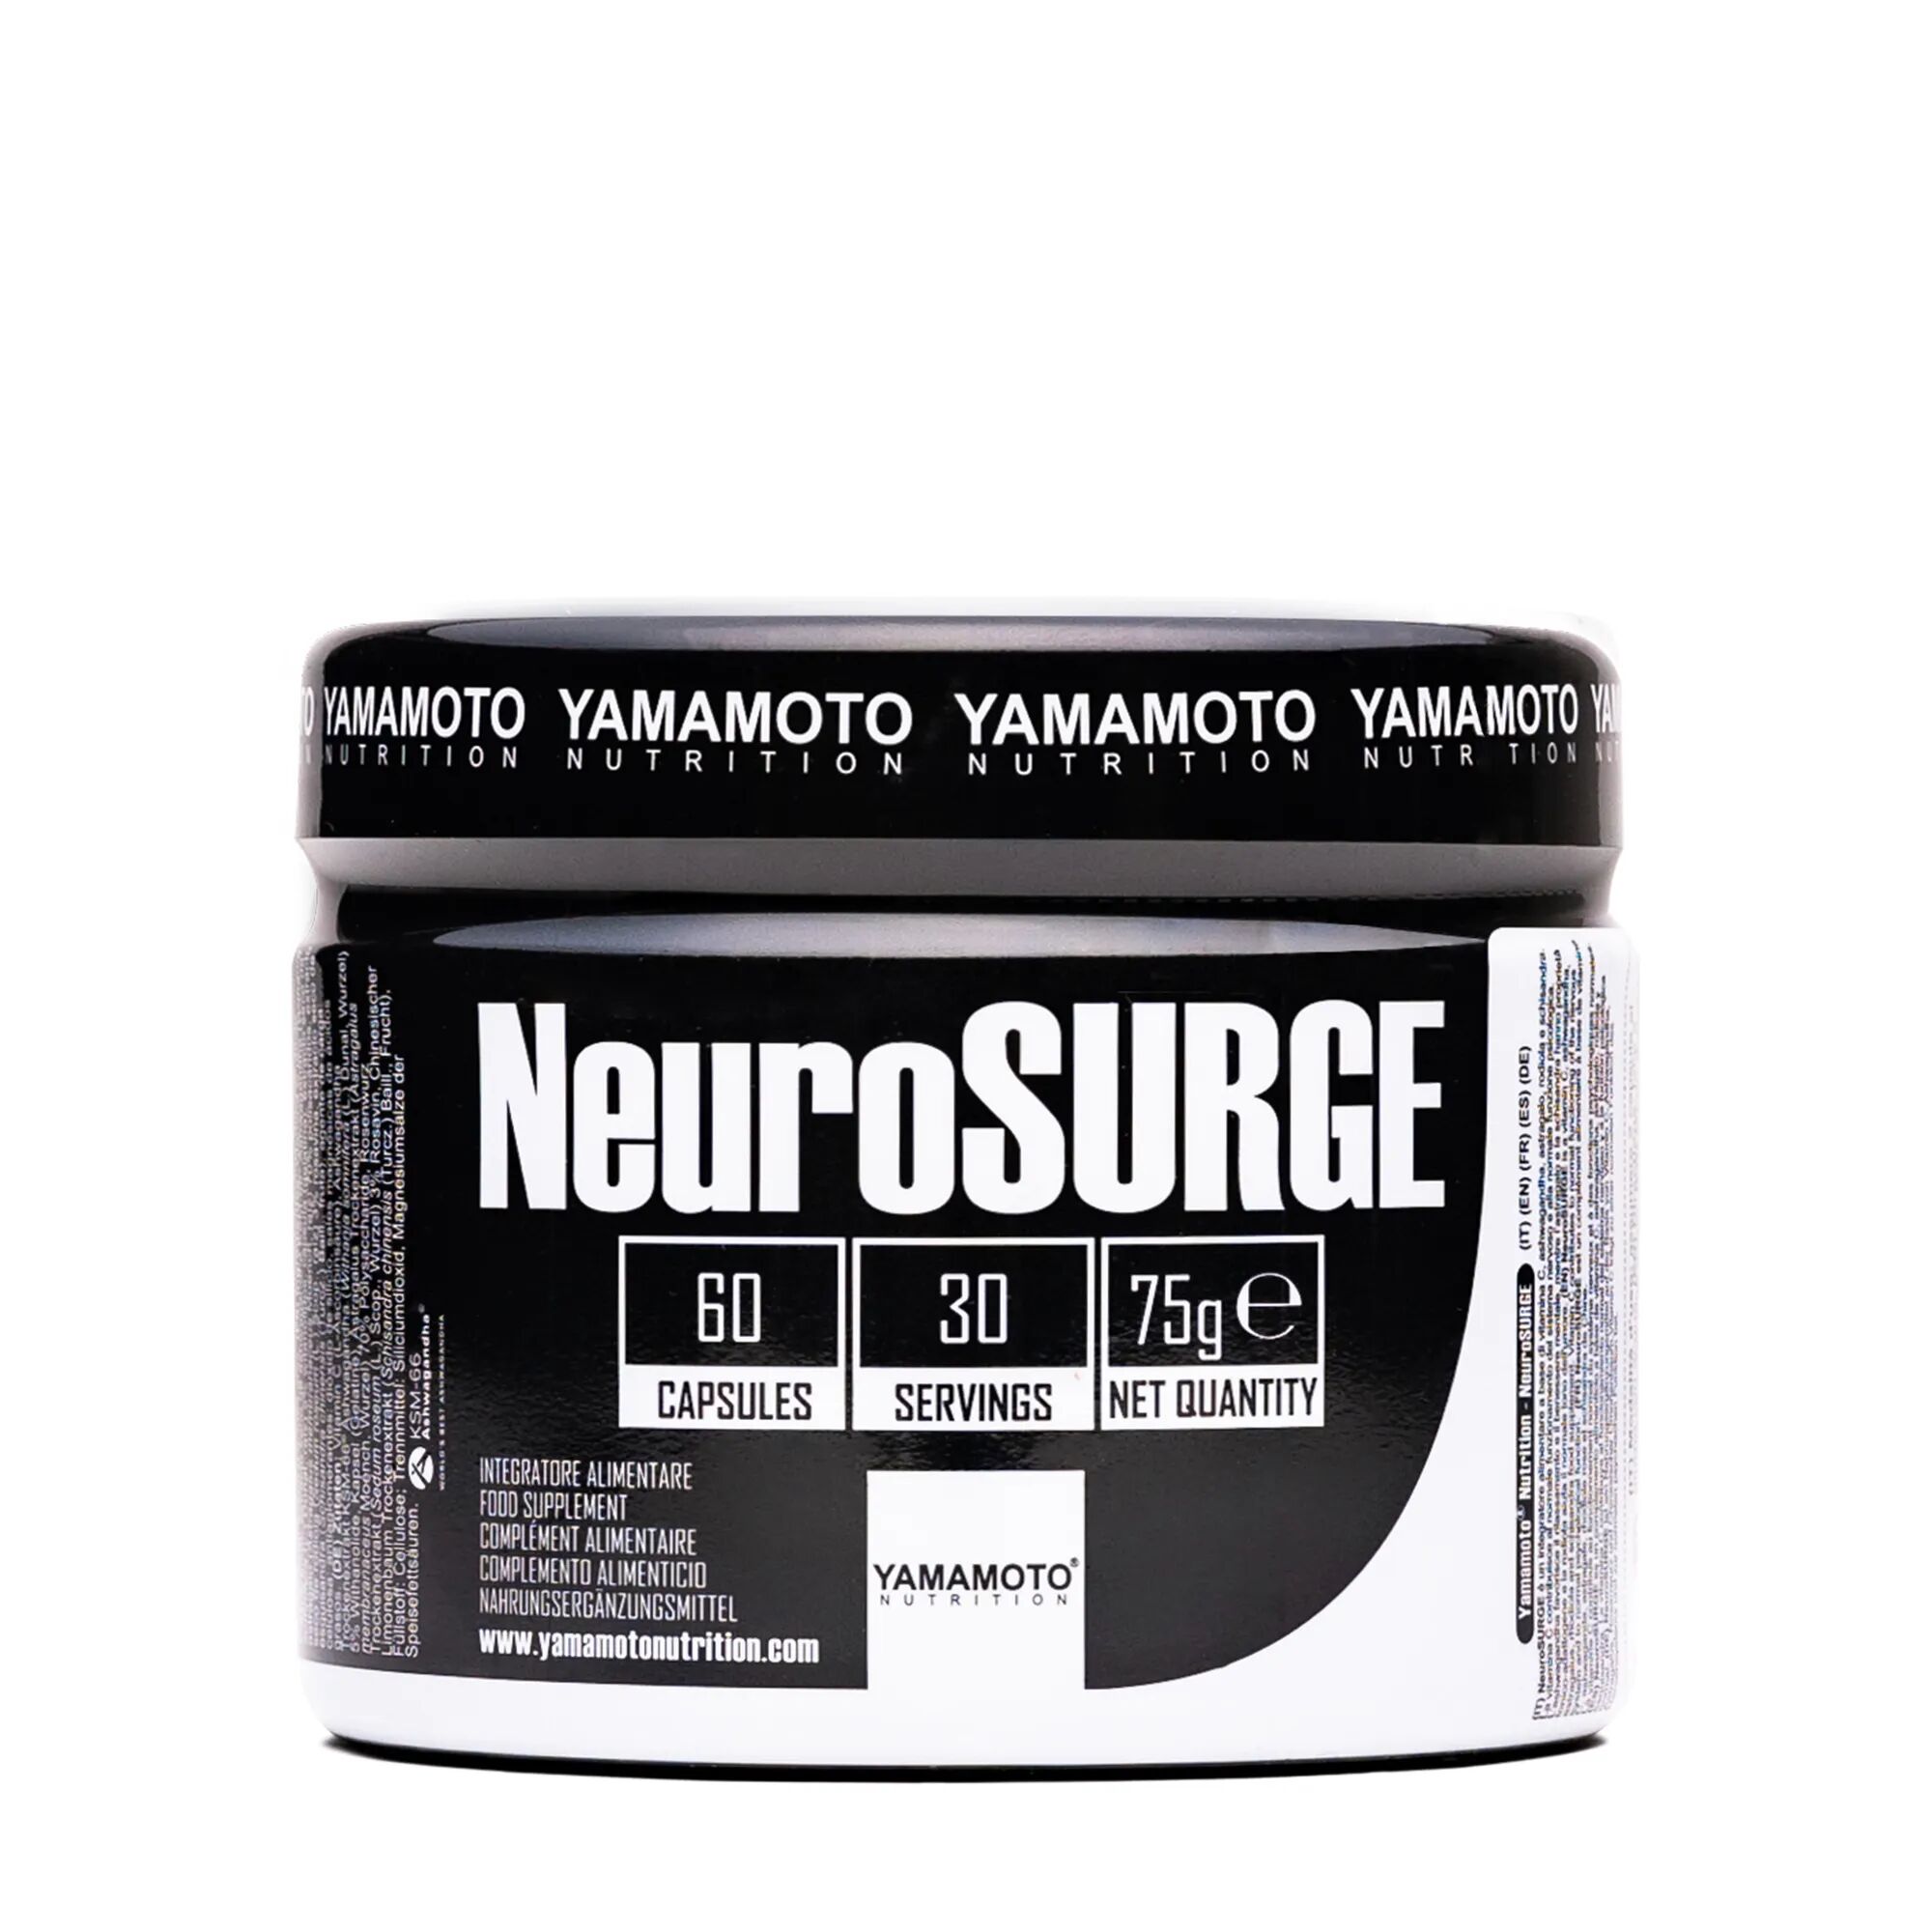 YAMAMOTO NUTRITION NeuroSURGE 60 compresse 